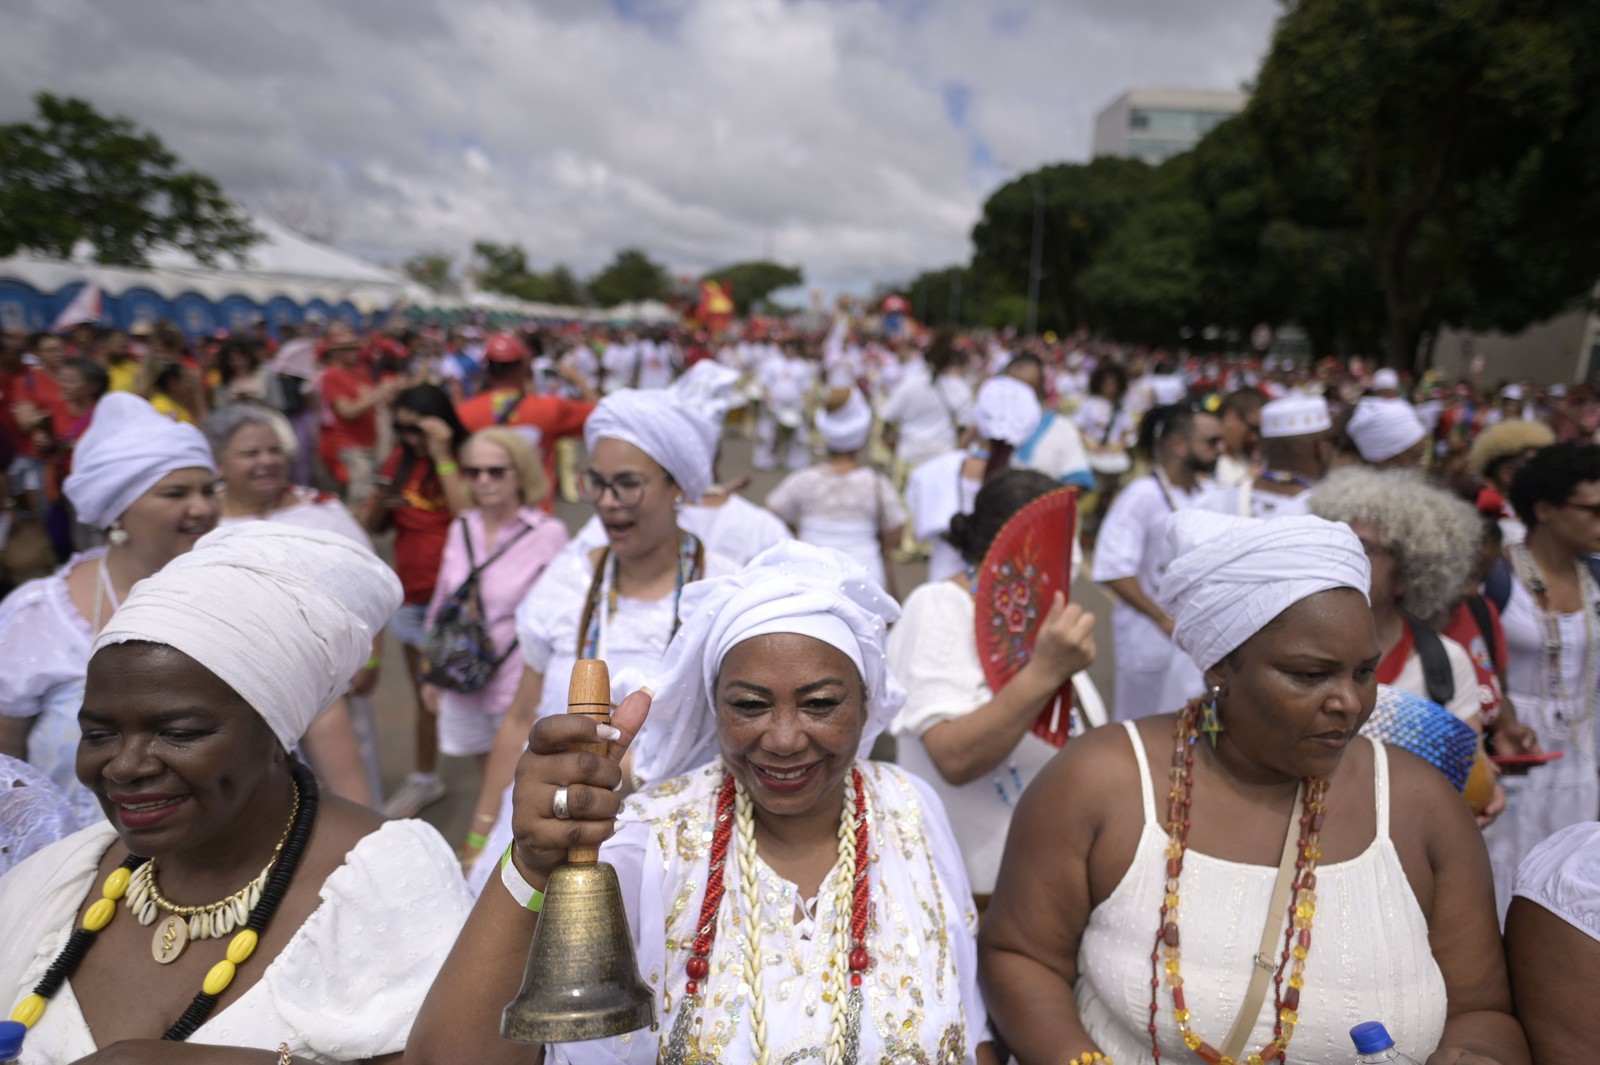 Mulheres com trajes tradicionais de religiões de matriz africana comparecem à posse de Lula em Brasília — Foto: DOUGLAS MAGNO / AFP